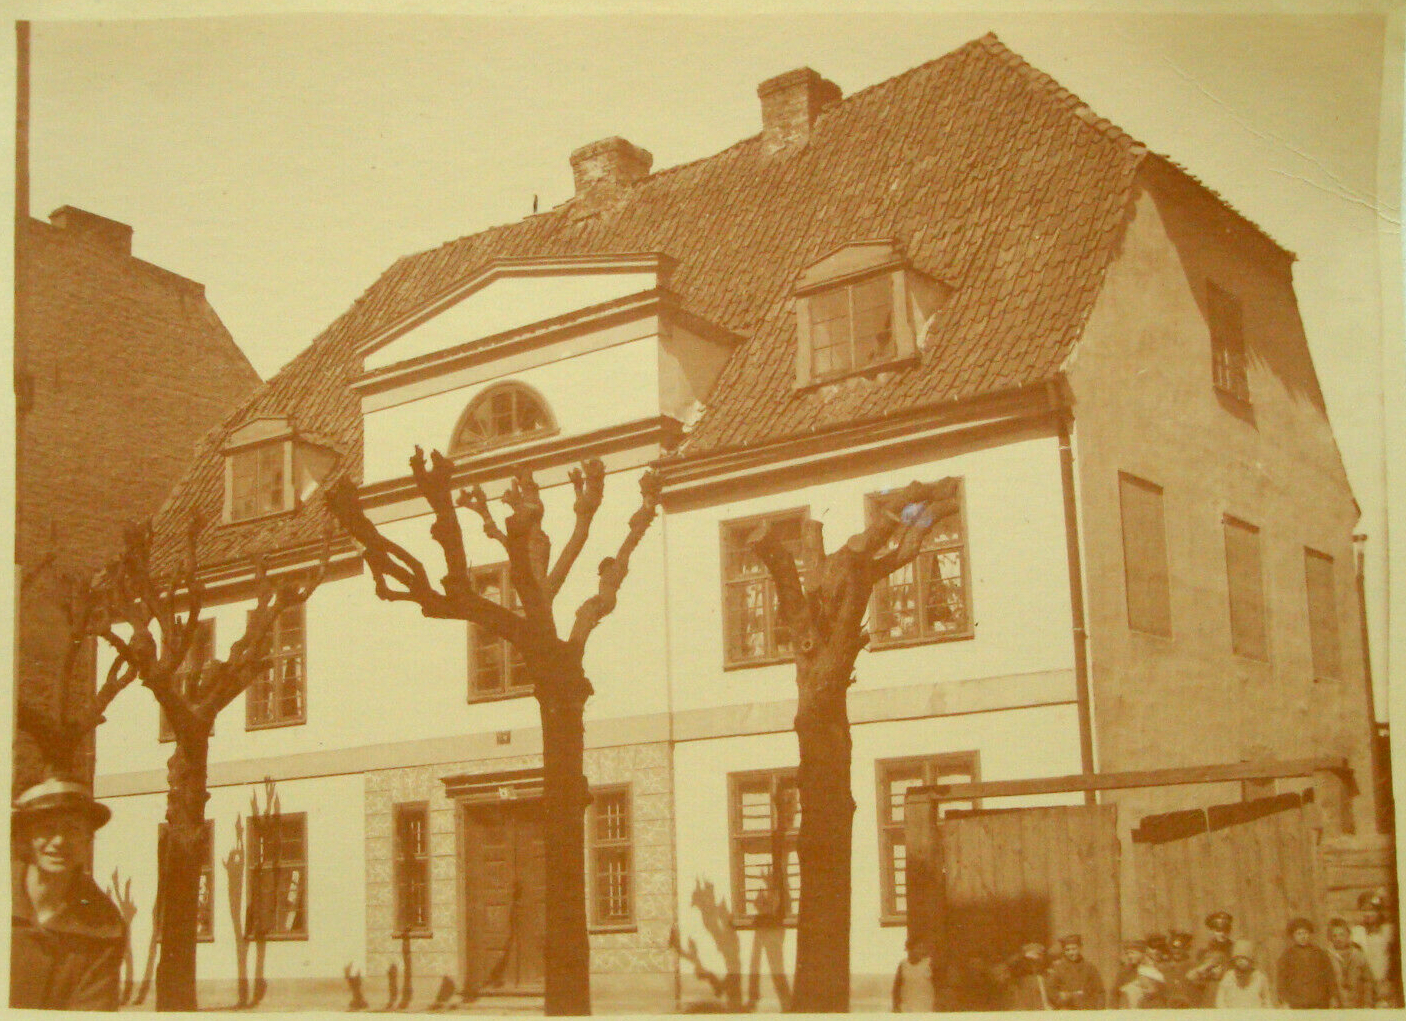 Na starym zdjęciu widać piętrowy budynek mieszkalny o białej fasadzie i spadzistym dachu